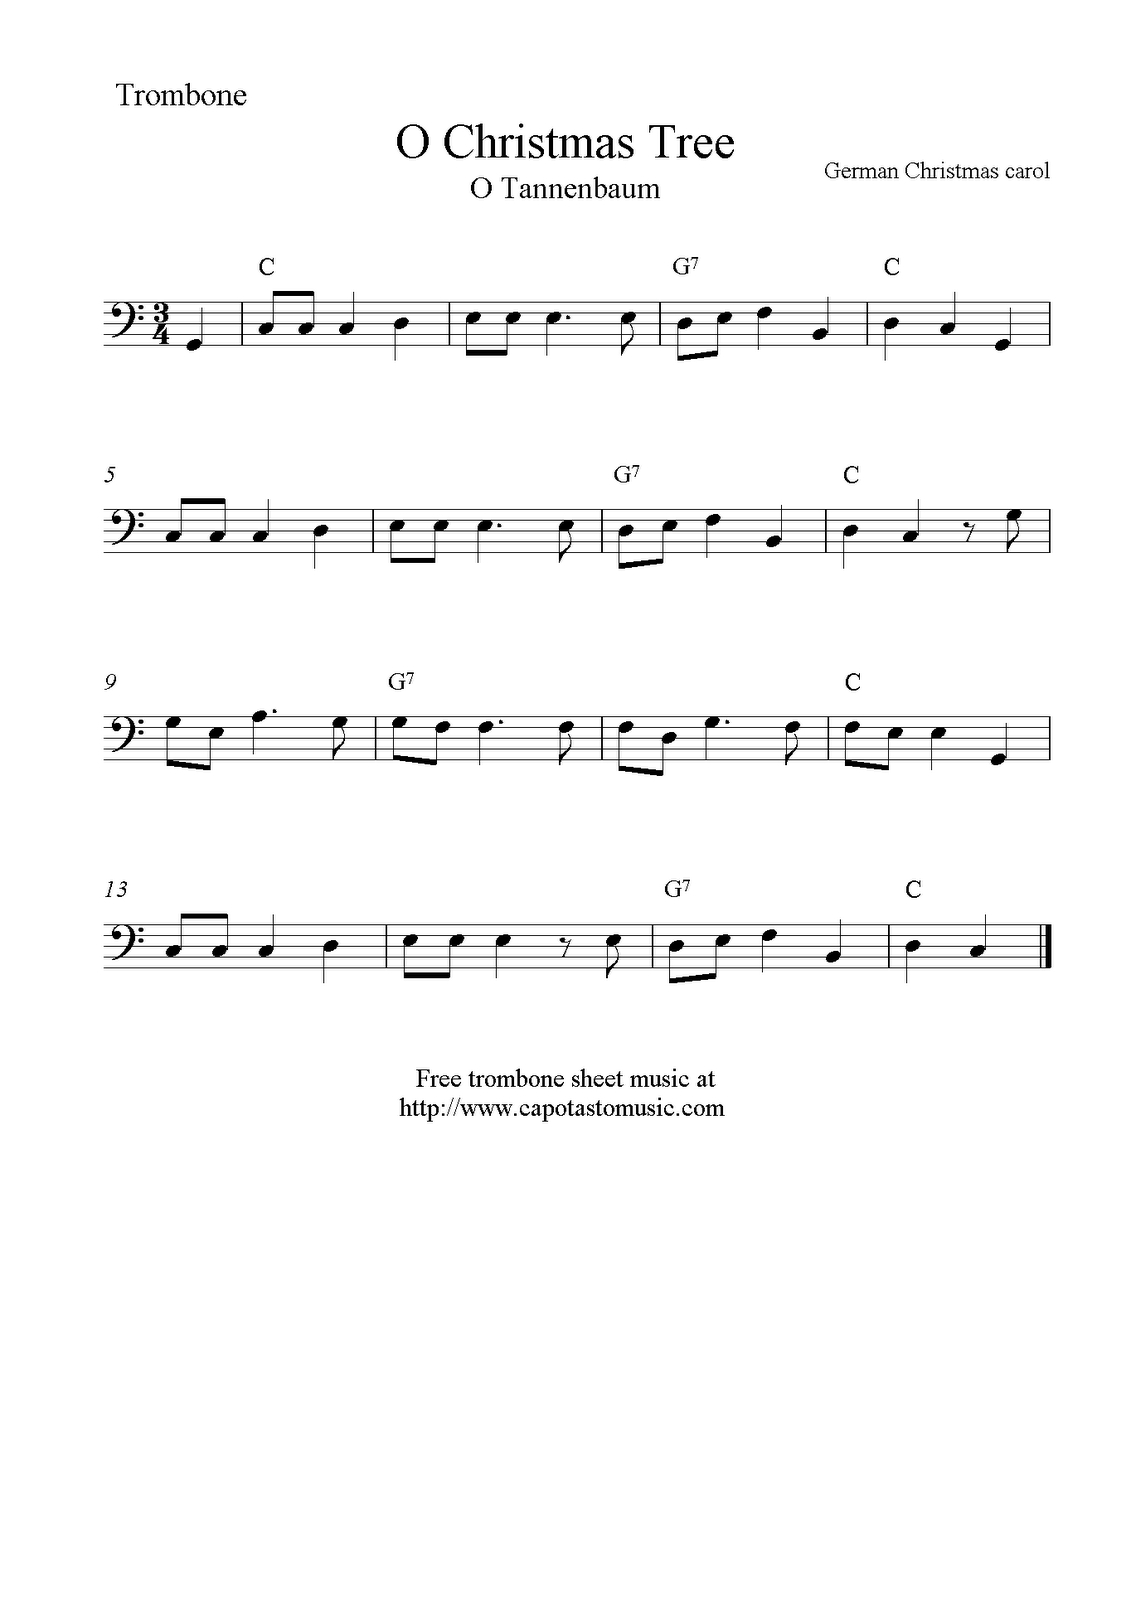 O Christmas Tree (O Tannenbaum), Free Christmas Trombone Sheet Music - Trombone Christmas Sheet Music Free Printable